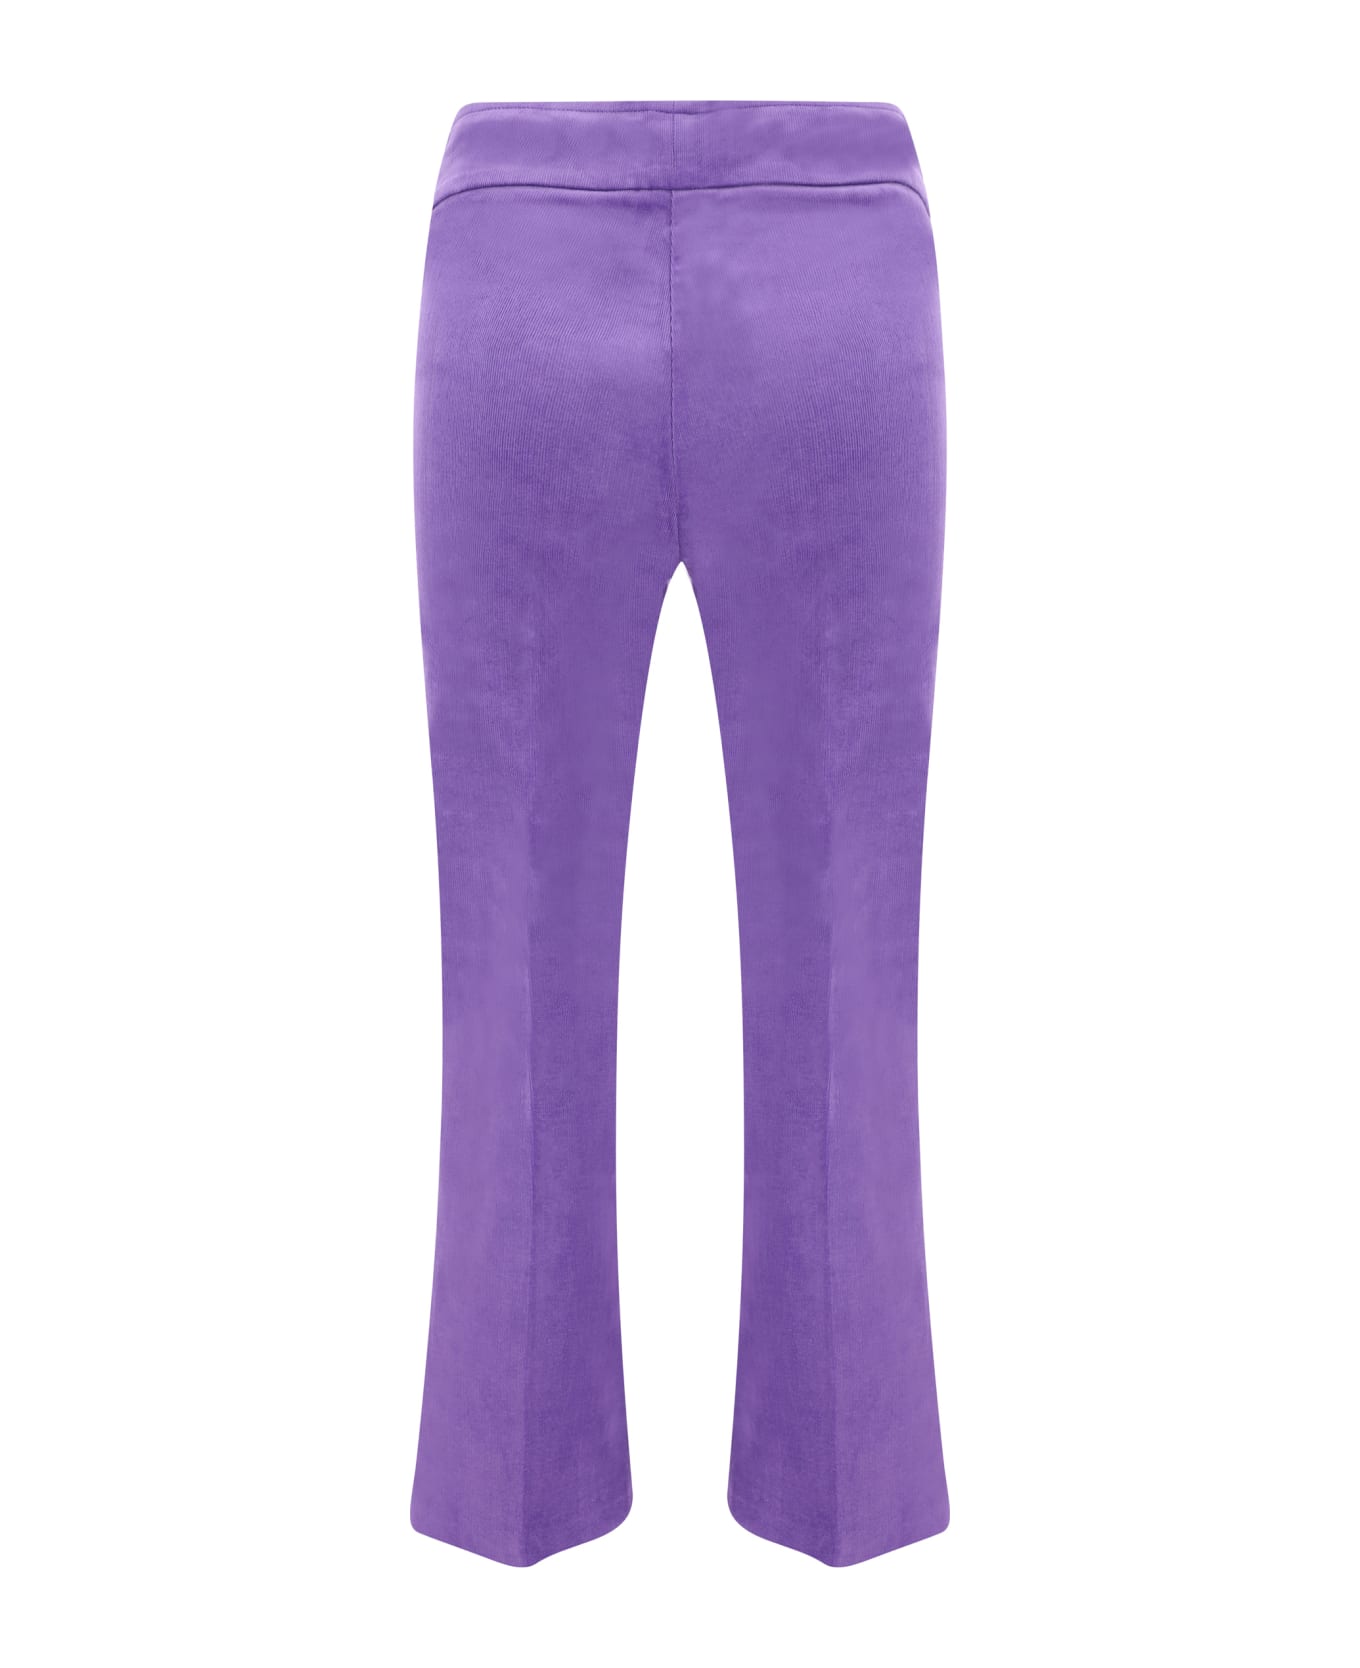 Avenue Montaigne Pants - Purple ボトムス